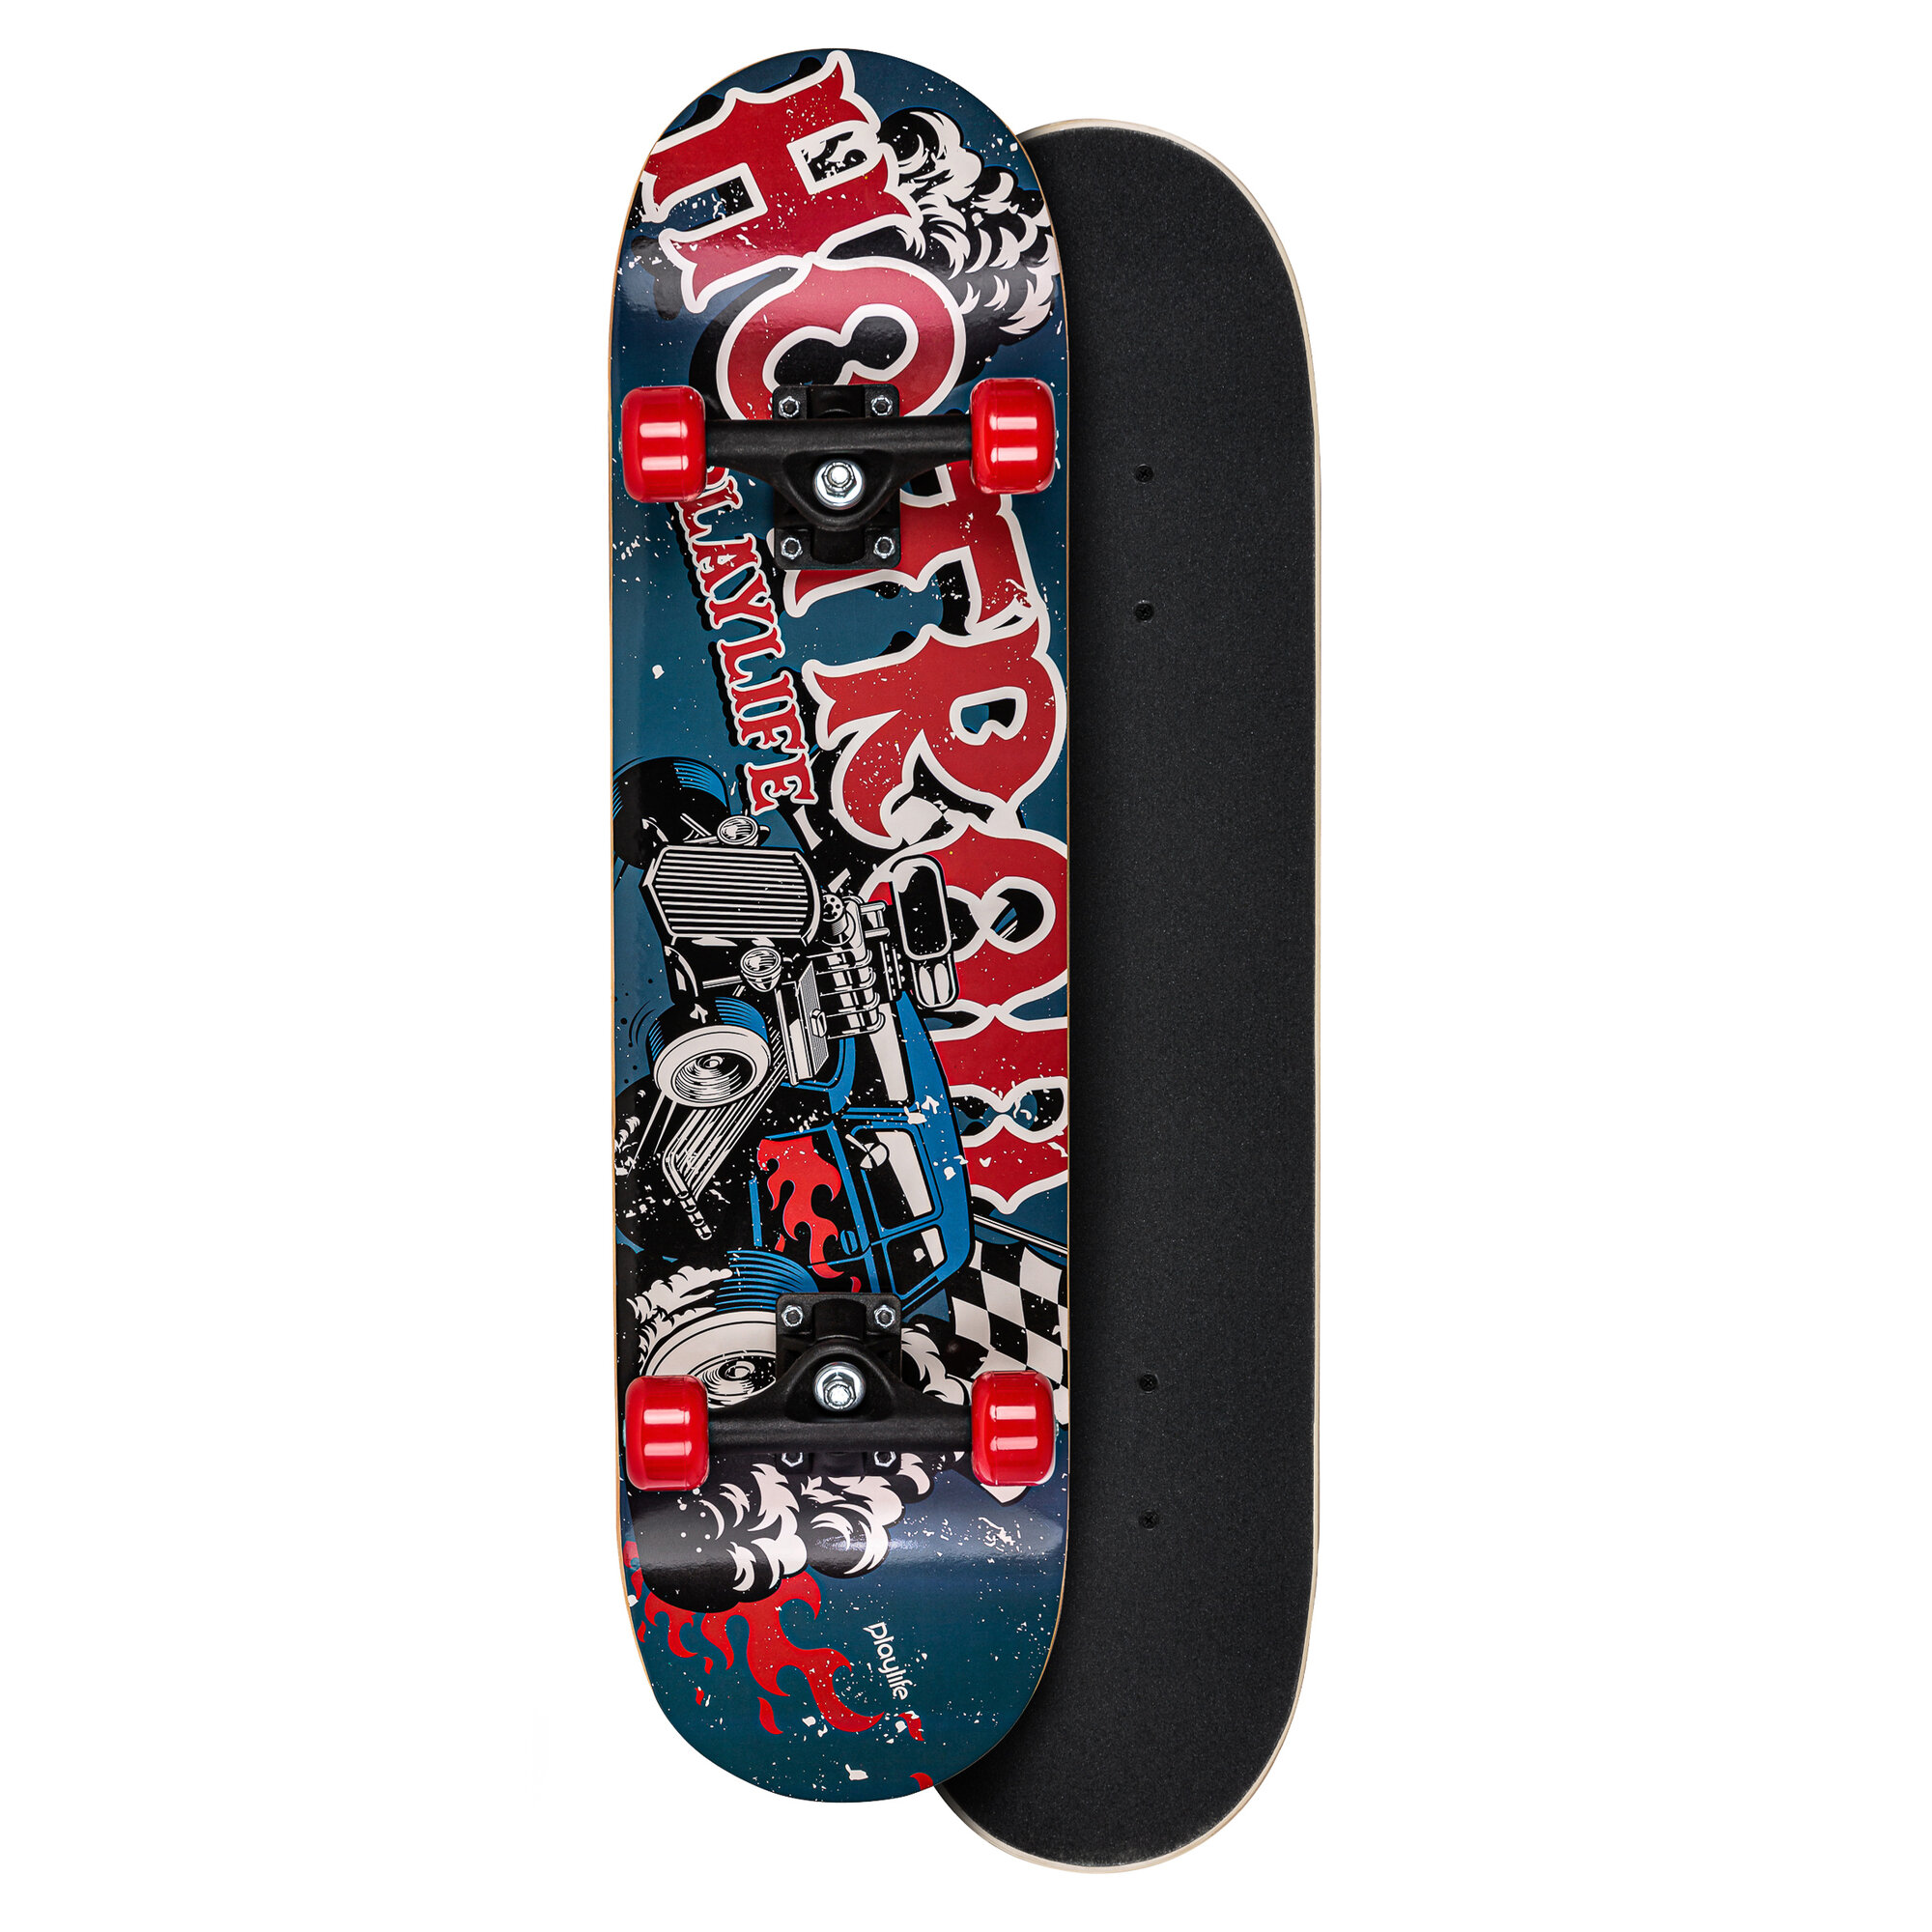 Playlife Hotrod Skateboard Kr. 249 - på lager til omgående levering